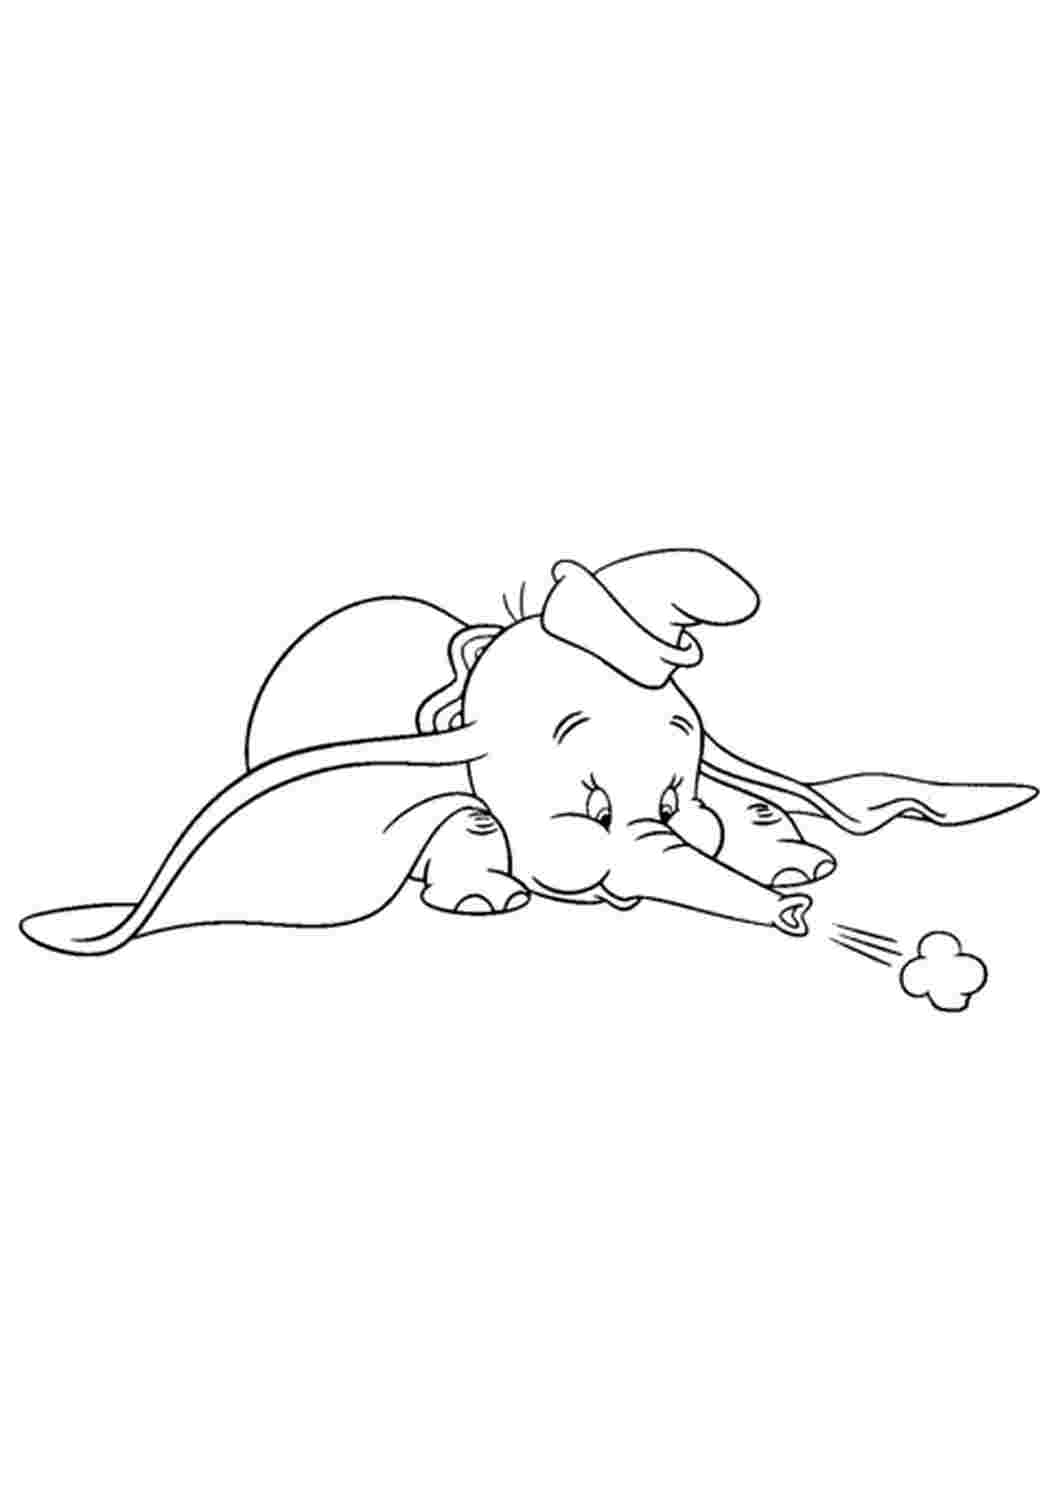 Раскраски  раскраски на тему Дамбо                   раскраски на тему слоненок Дамбо для мальчиков и девочек. Интересные раскраски с персонажами диснеевского мультфильма Дамбо для детей      